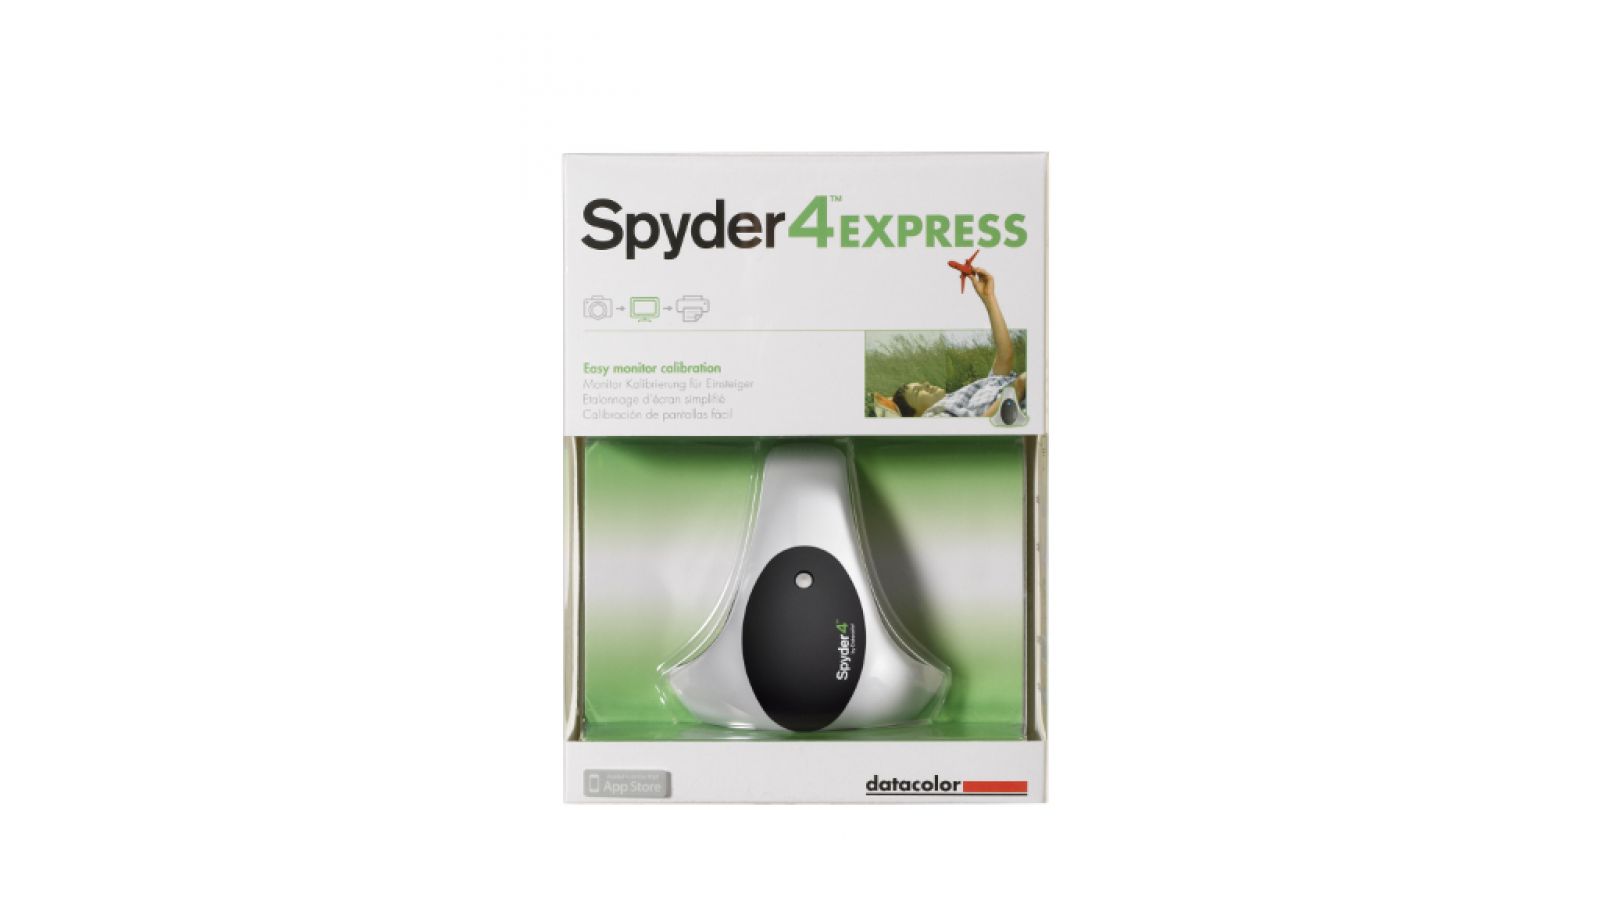 Spyder4 Express